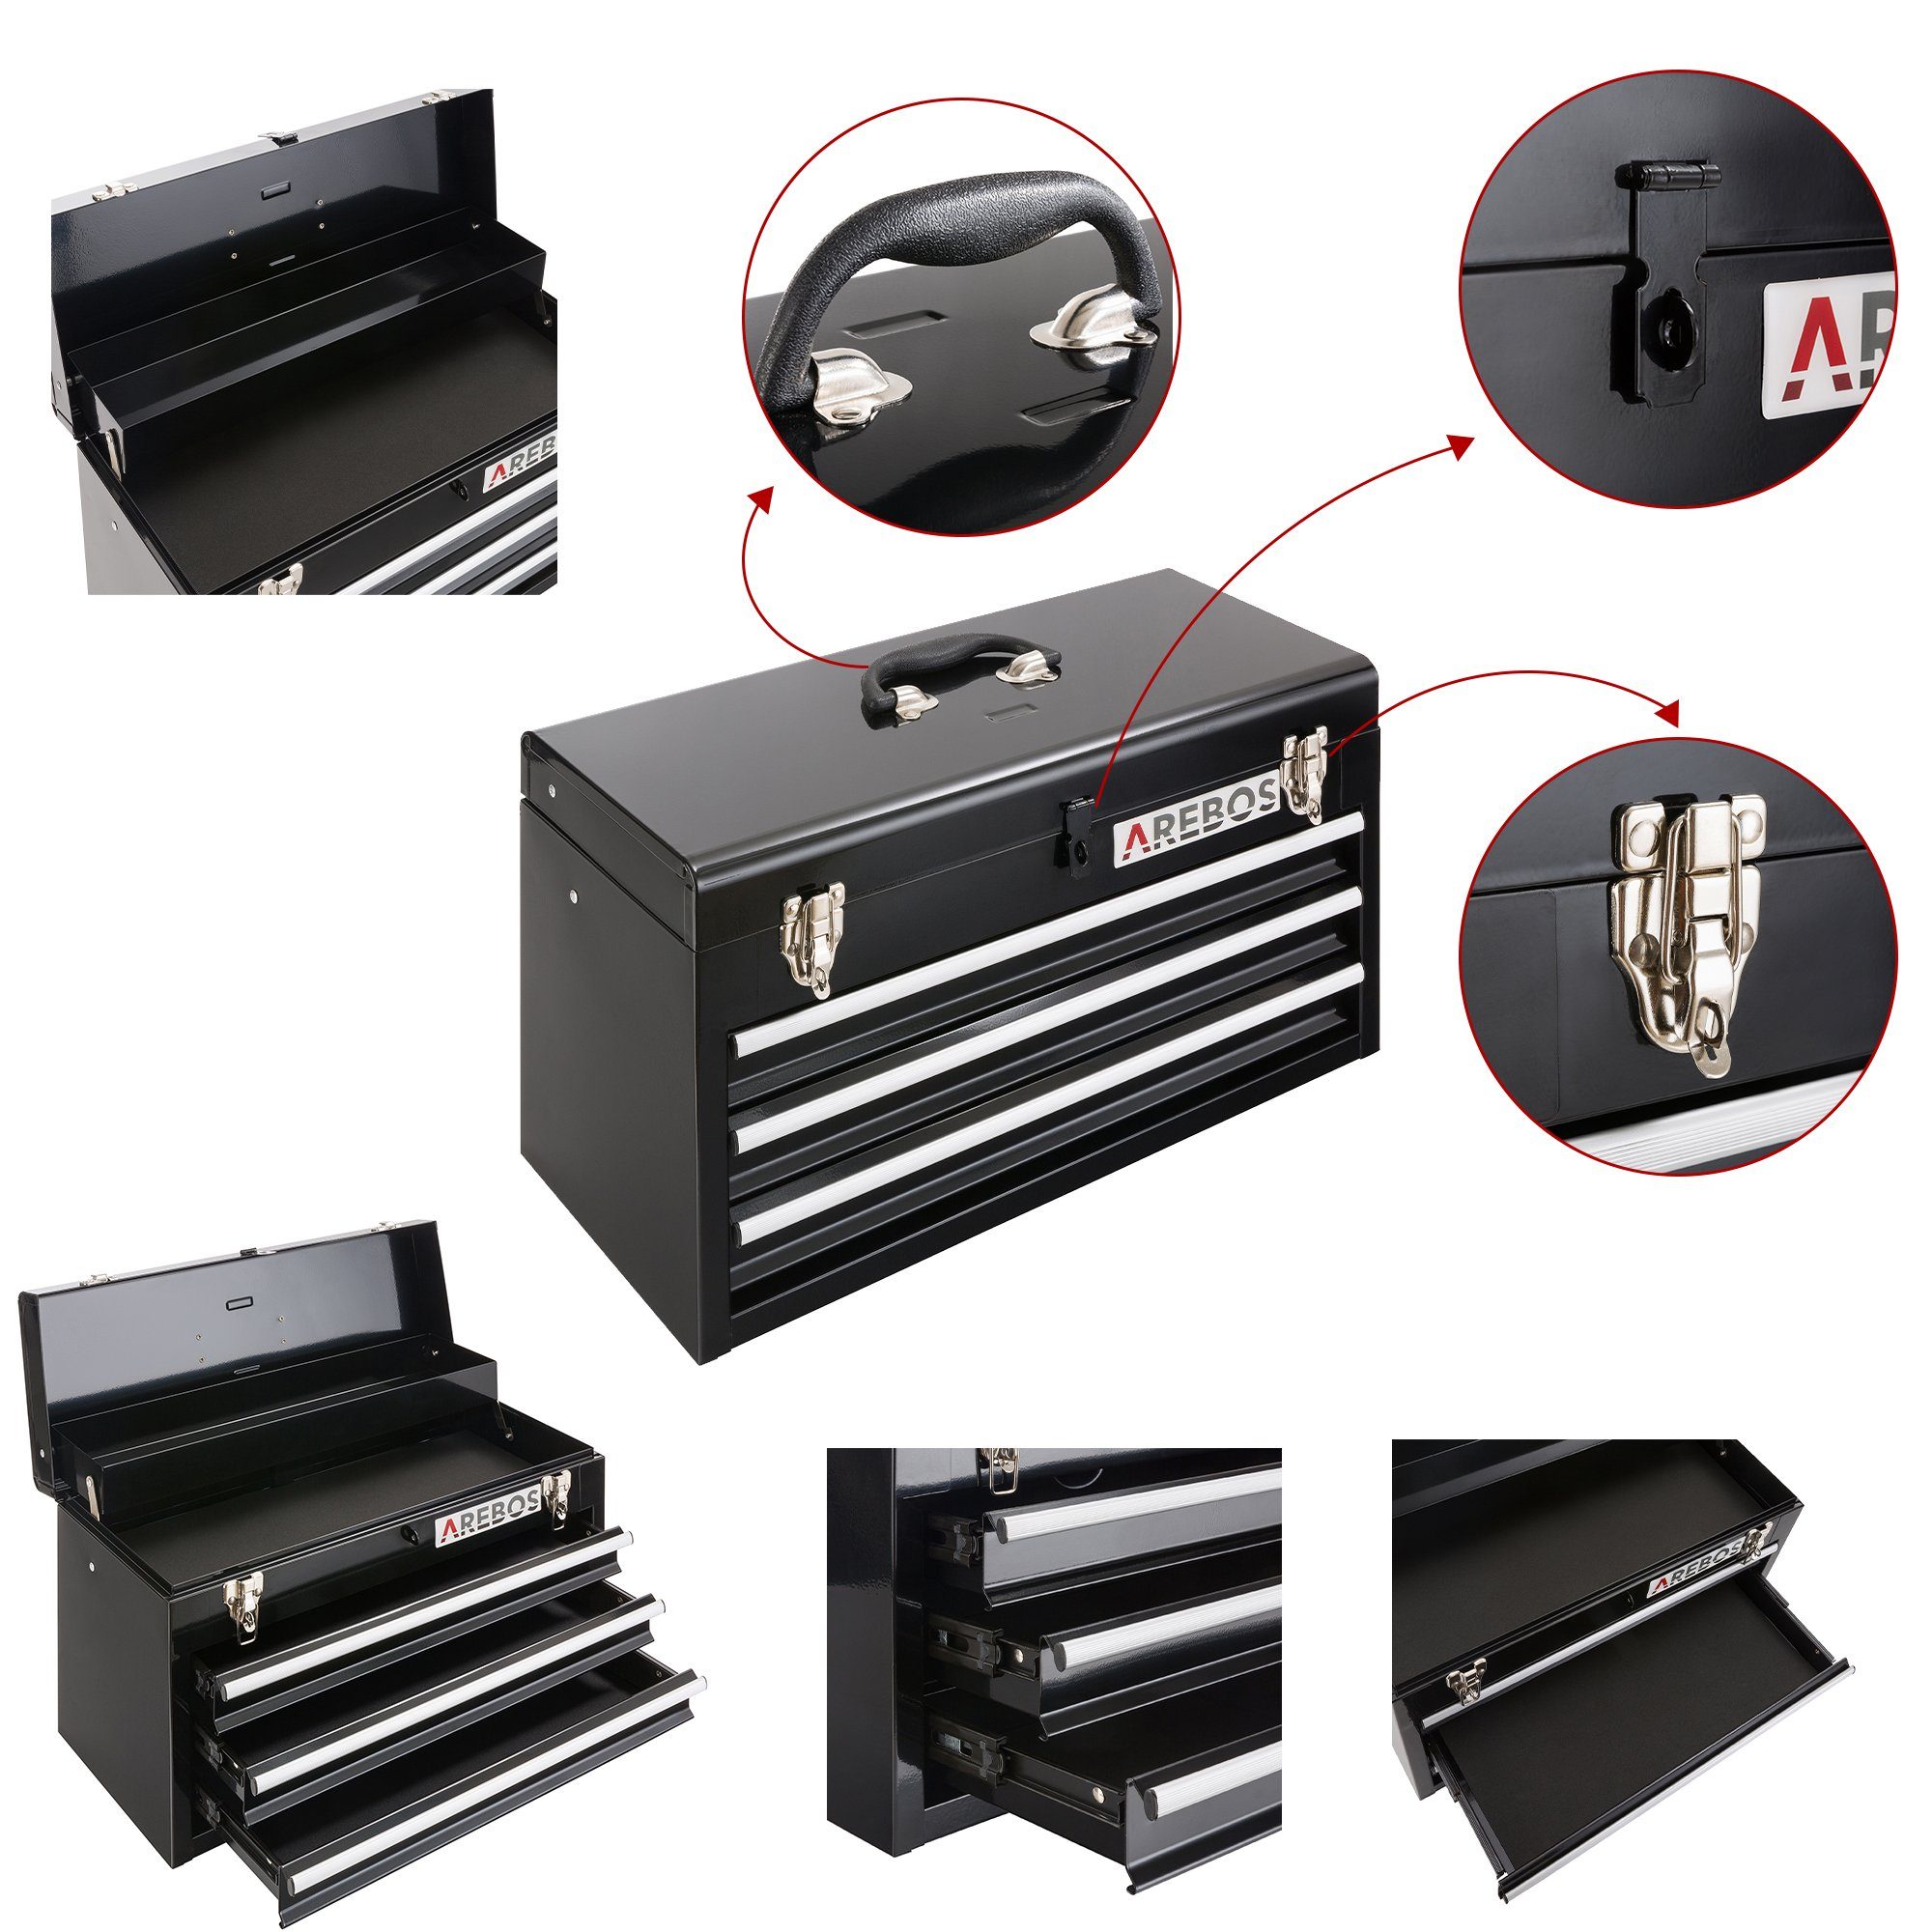 Arebos Schubladen Ablagefächern & mit 2 Werkzeugkoffer 3 schwarz